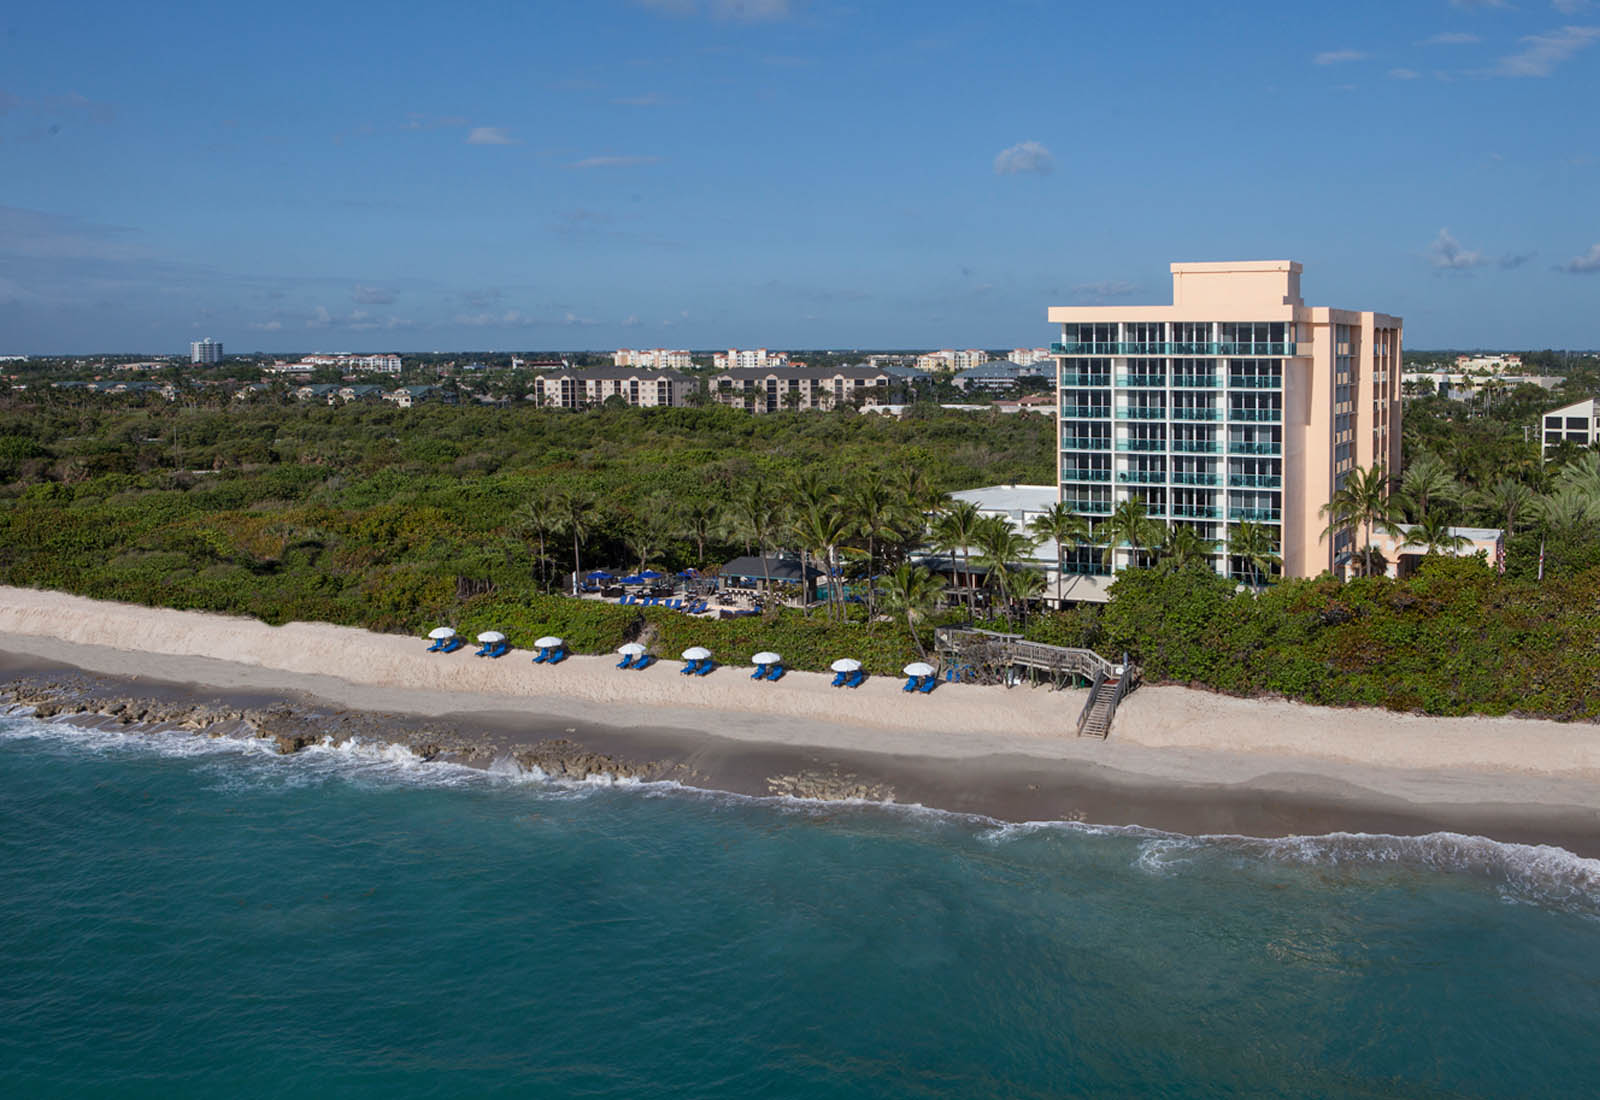 Jupiter Beach Resort And Spa West Palm Beach Fl Five Star Alliance